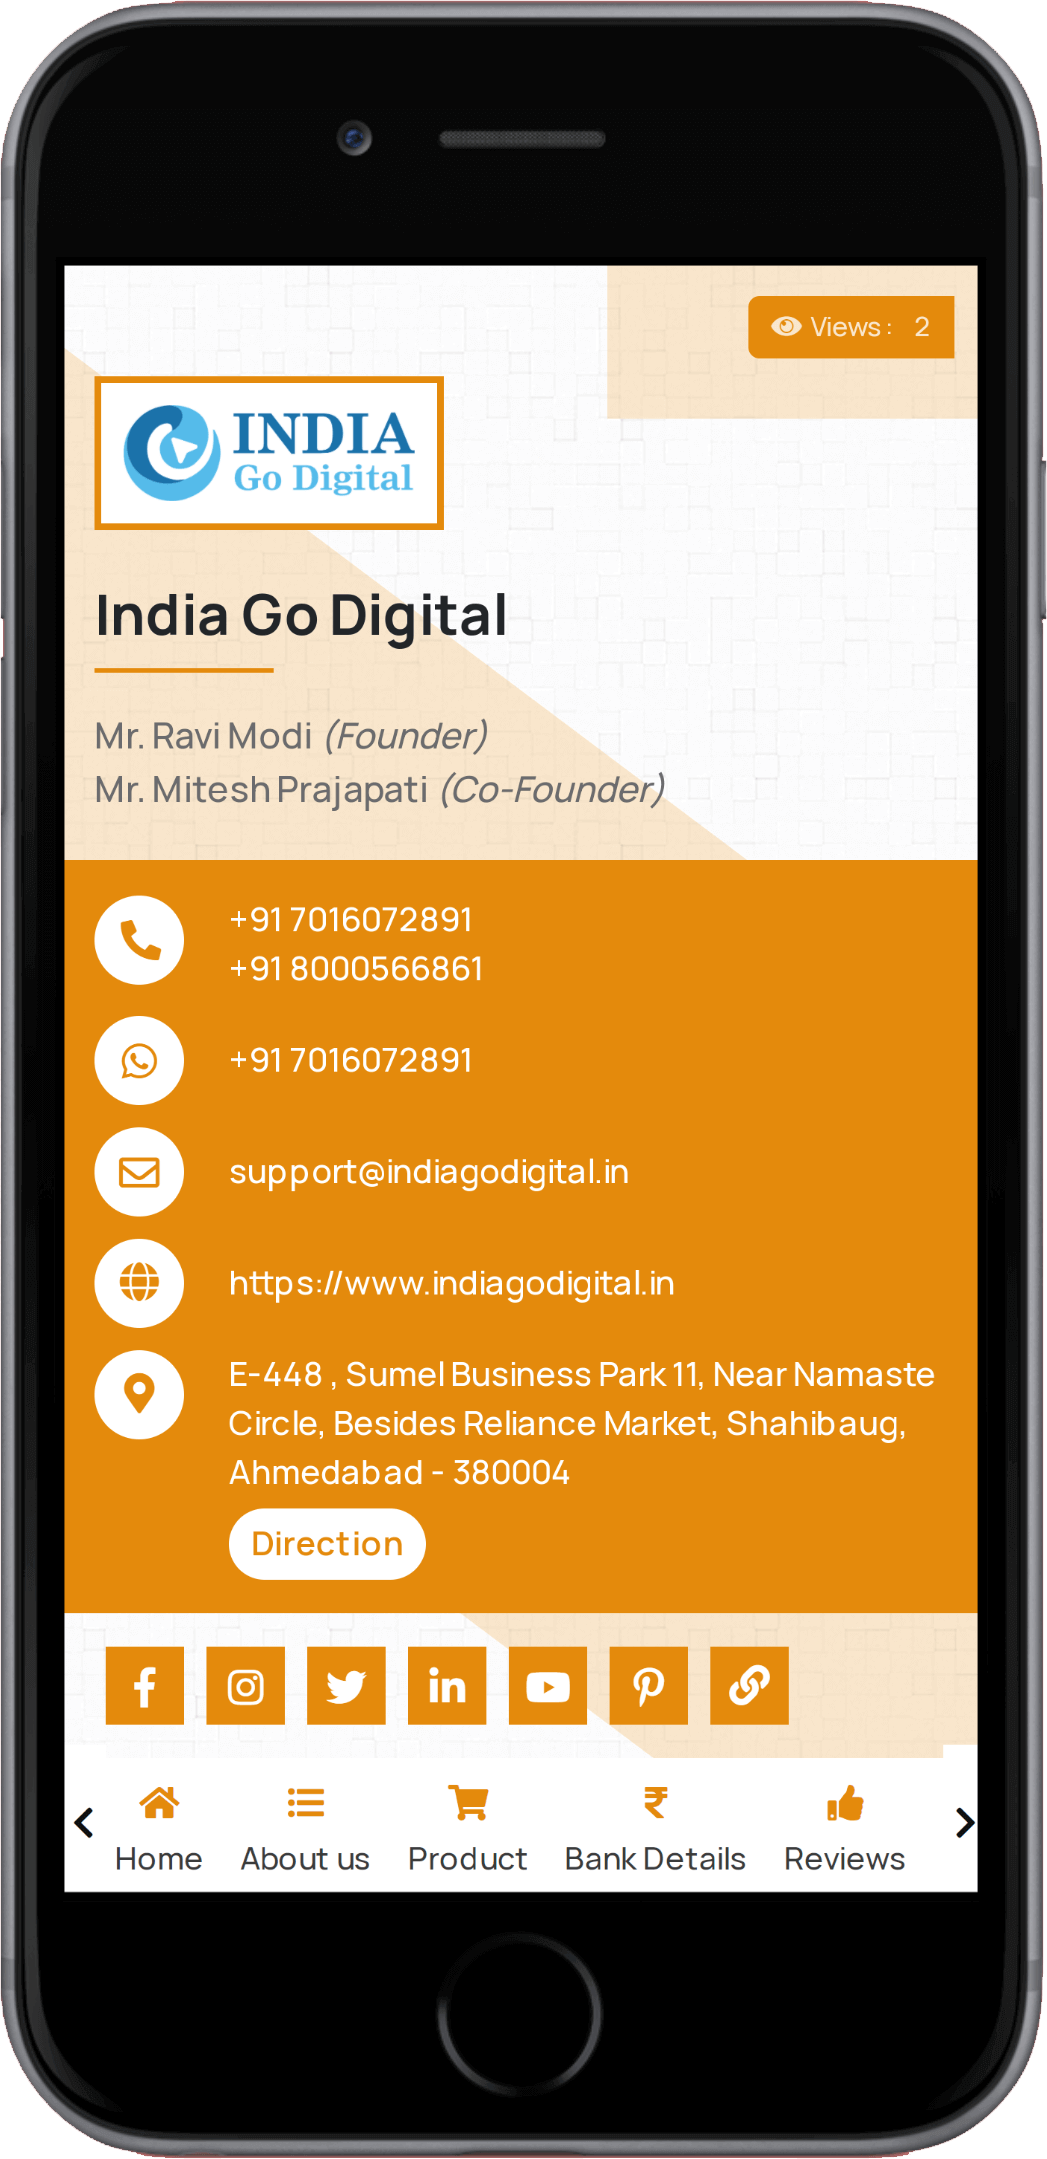 India Go Digital